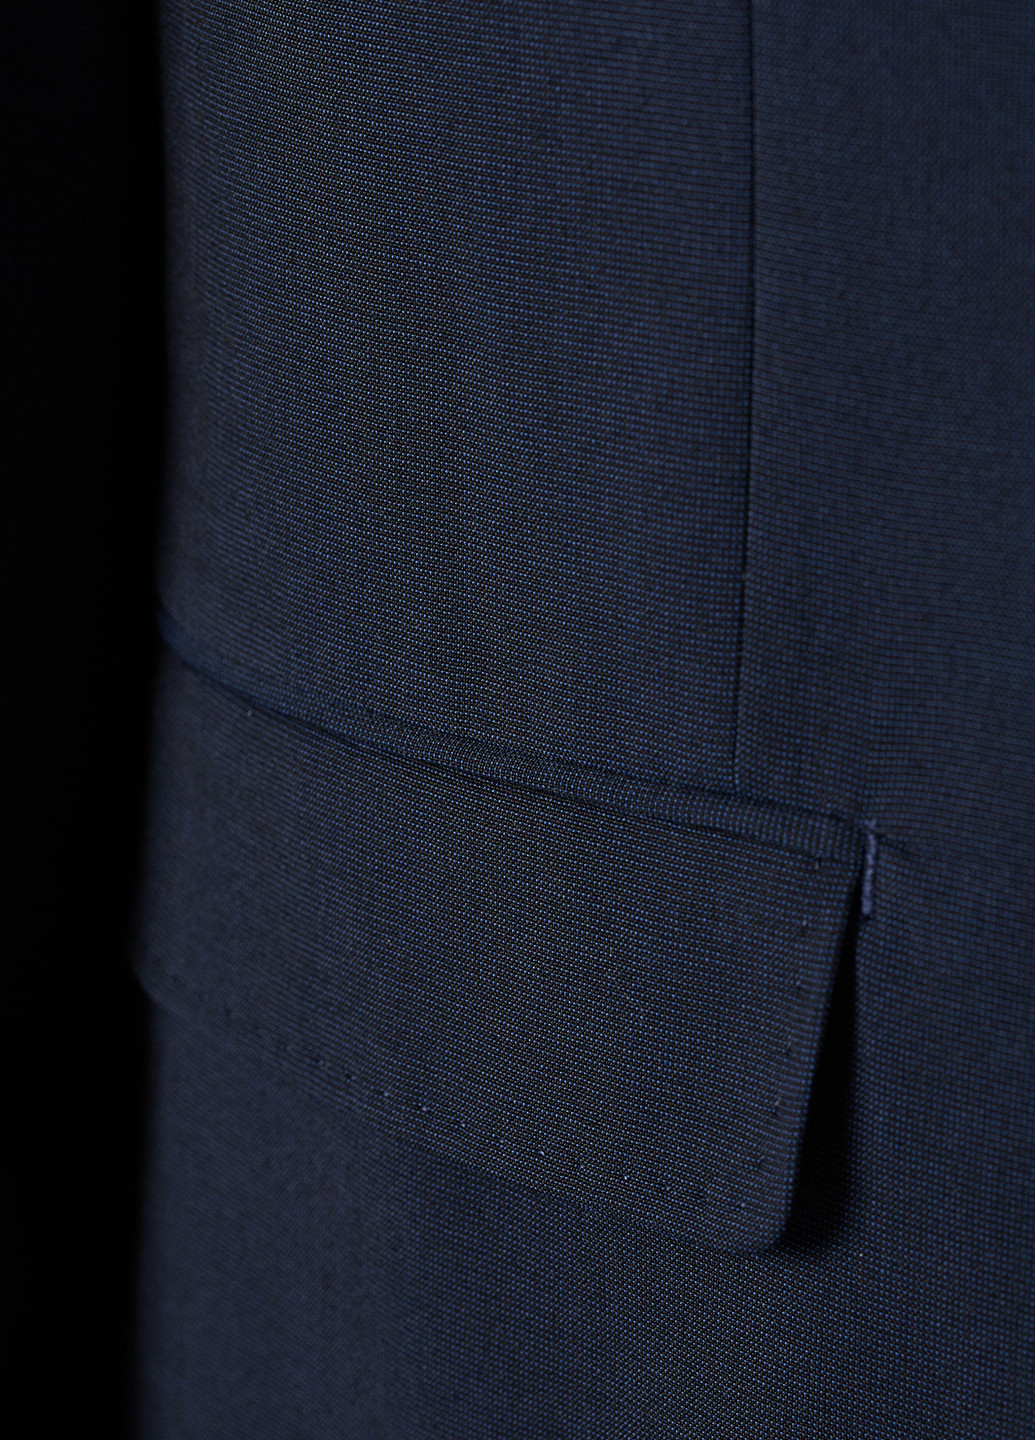 Піджак H&M однобортний однотонний темно-синій діловий поліестер, костюмна